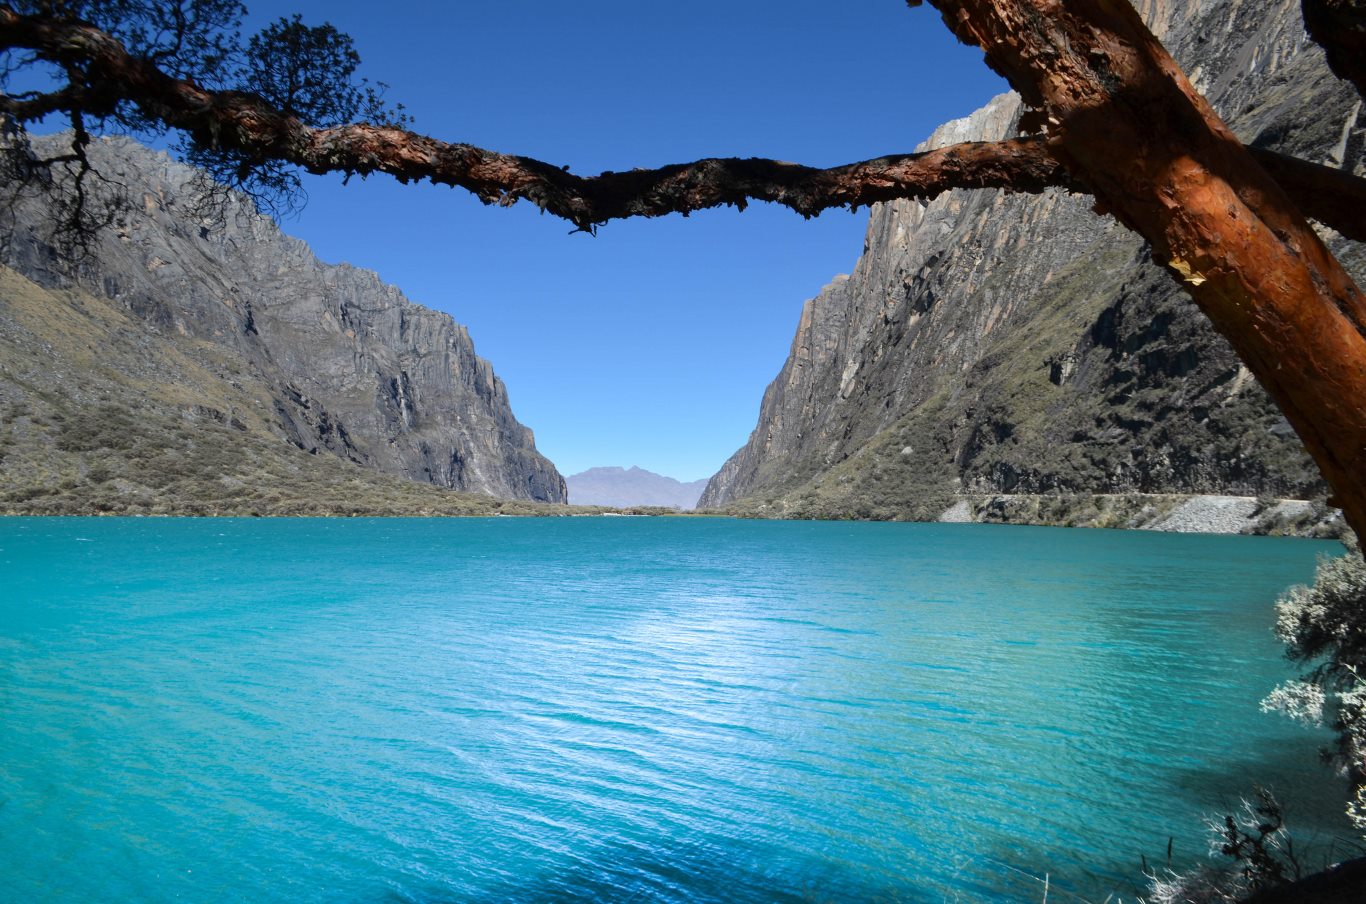 Northern Peru: Laguna 69